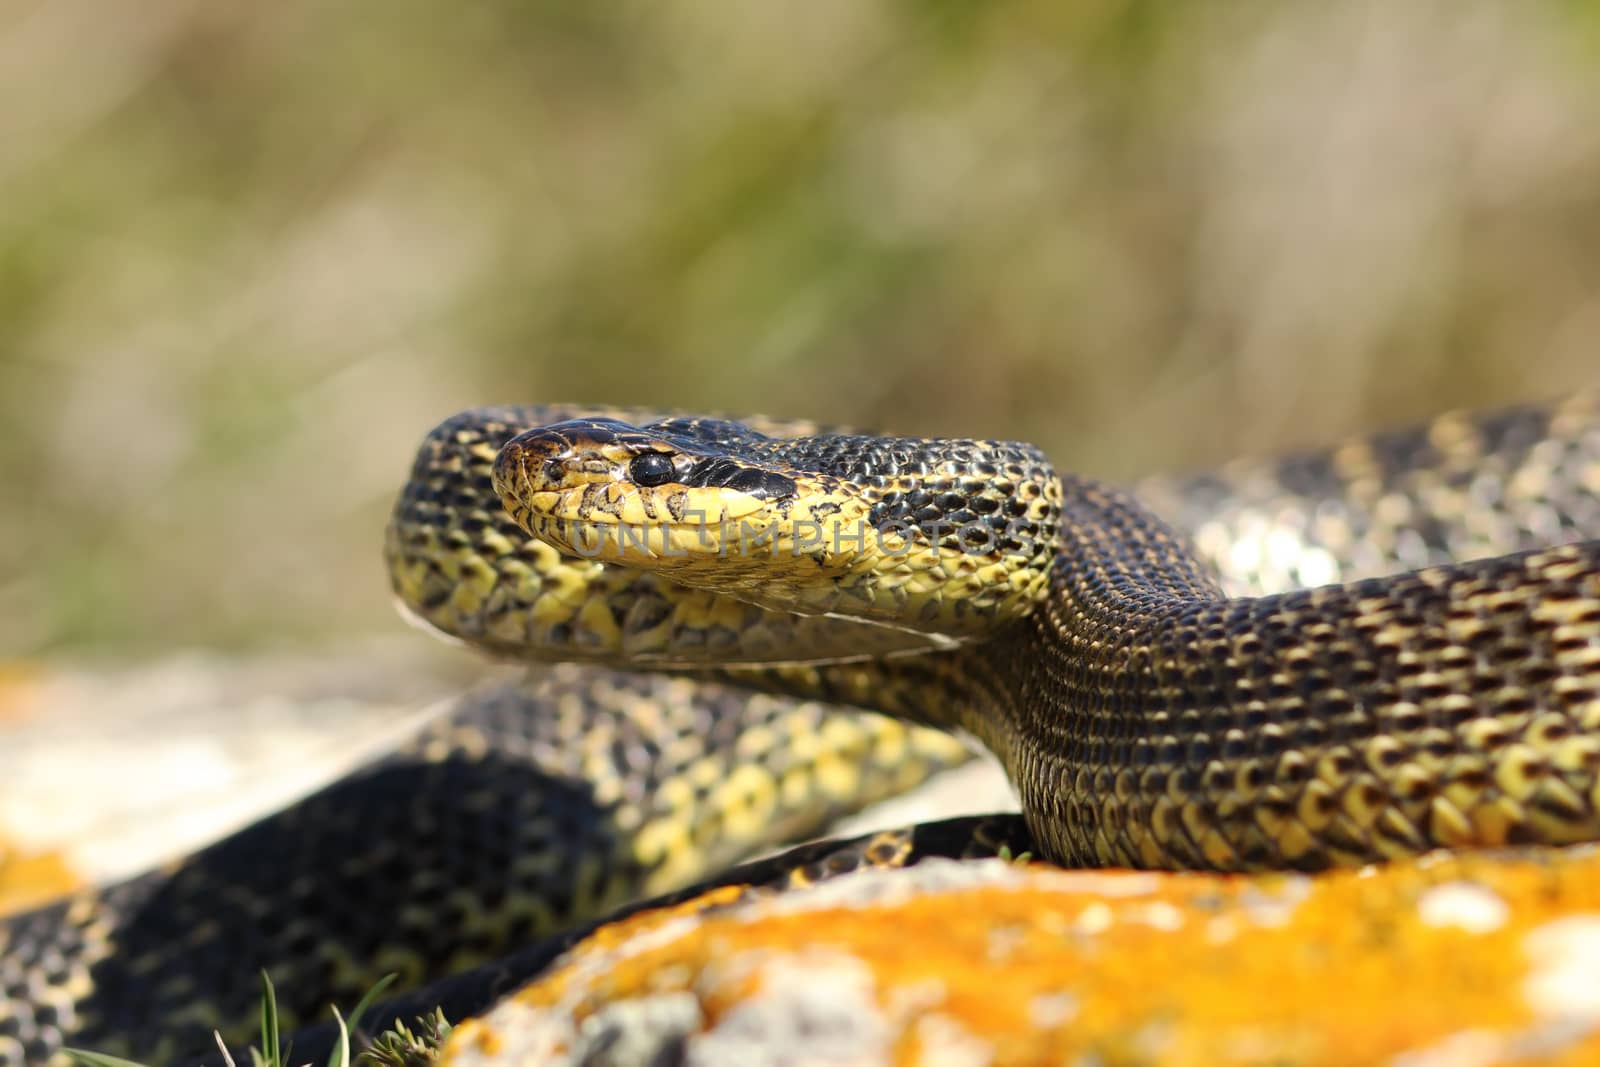 blotched snake on strike position by taviphoto